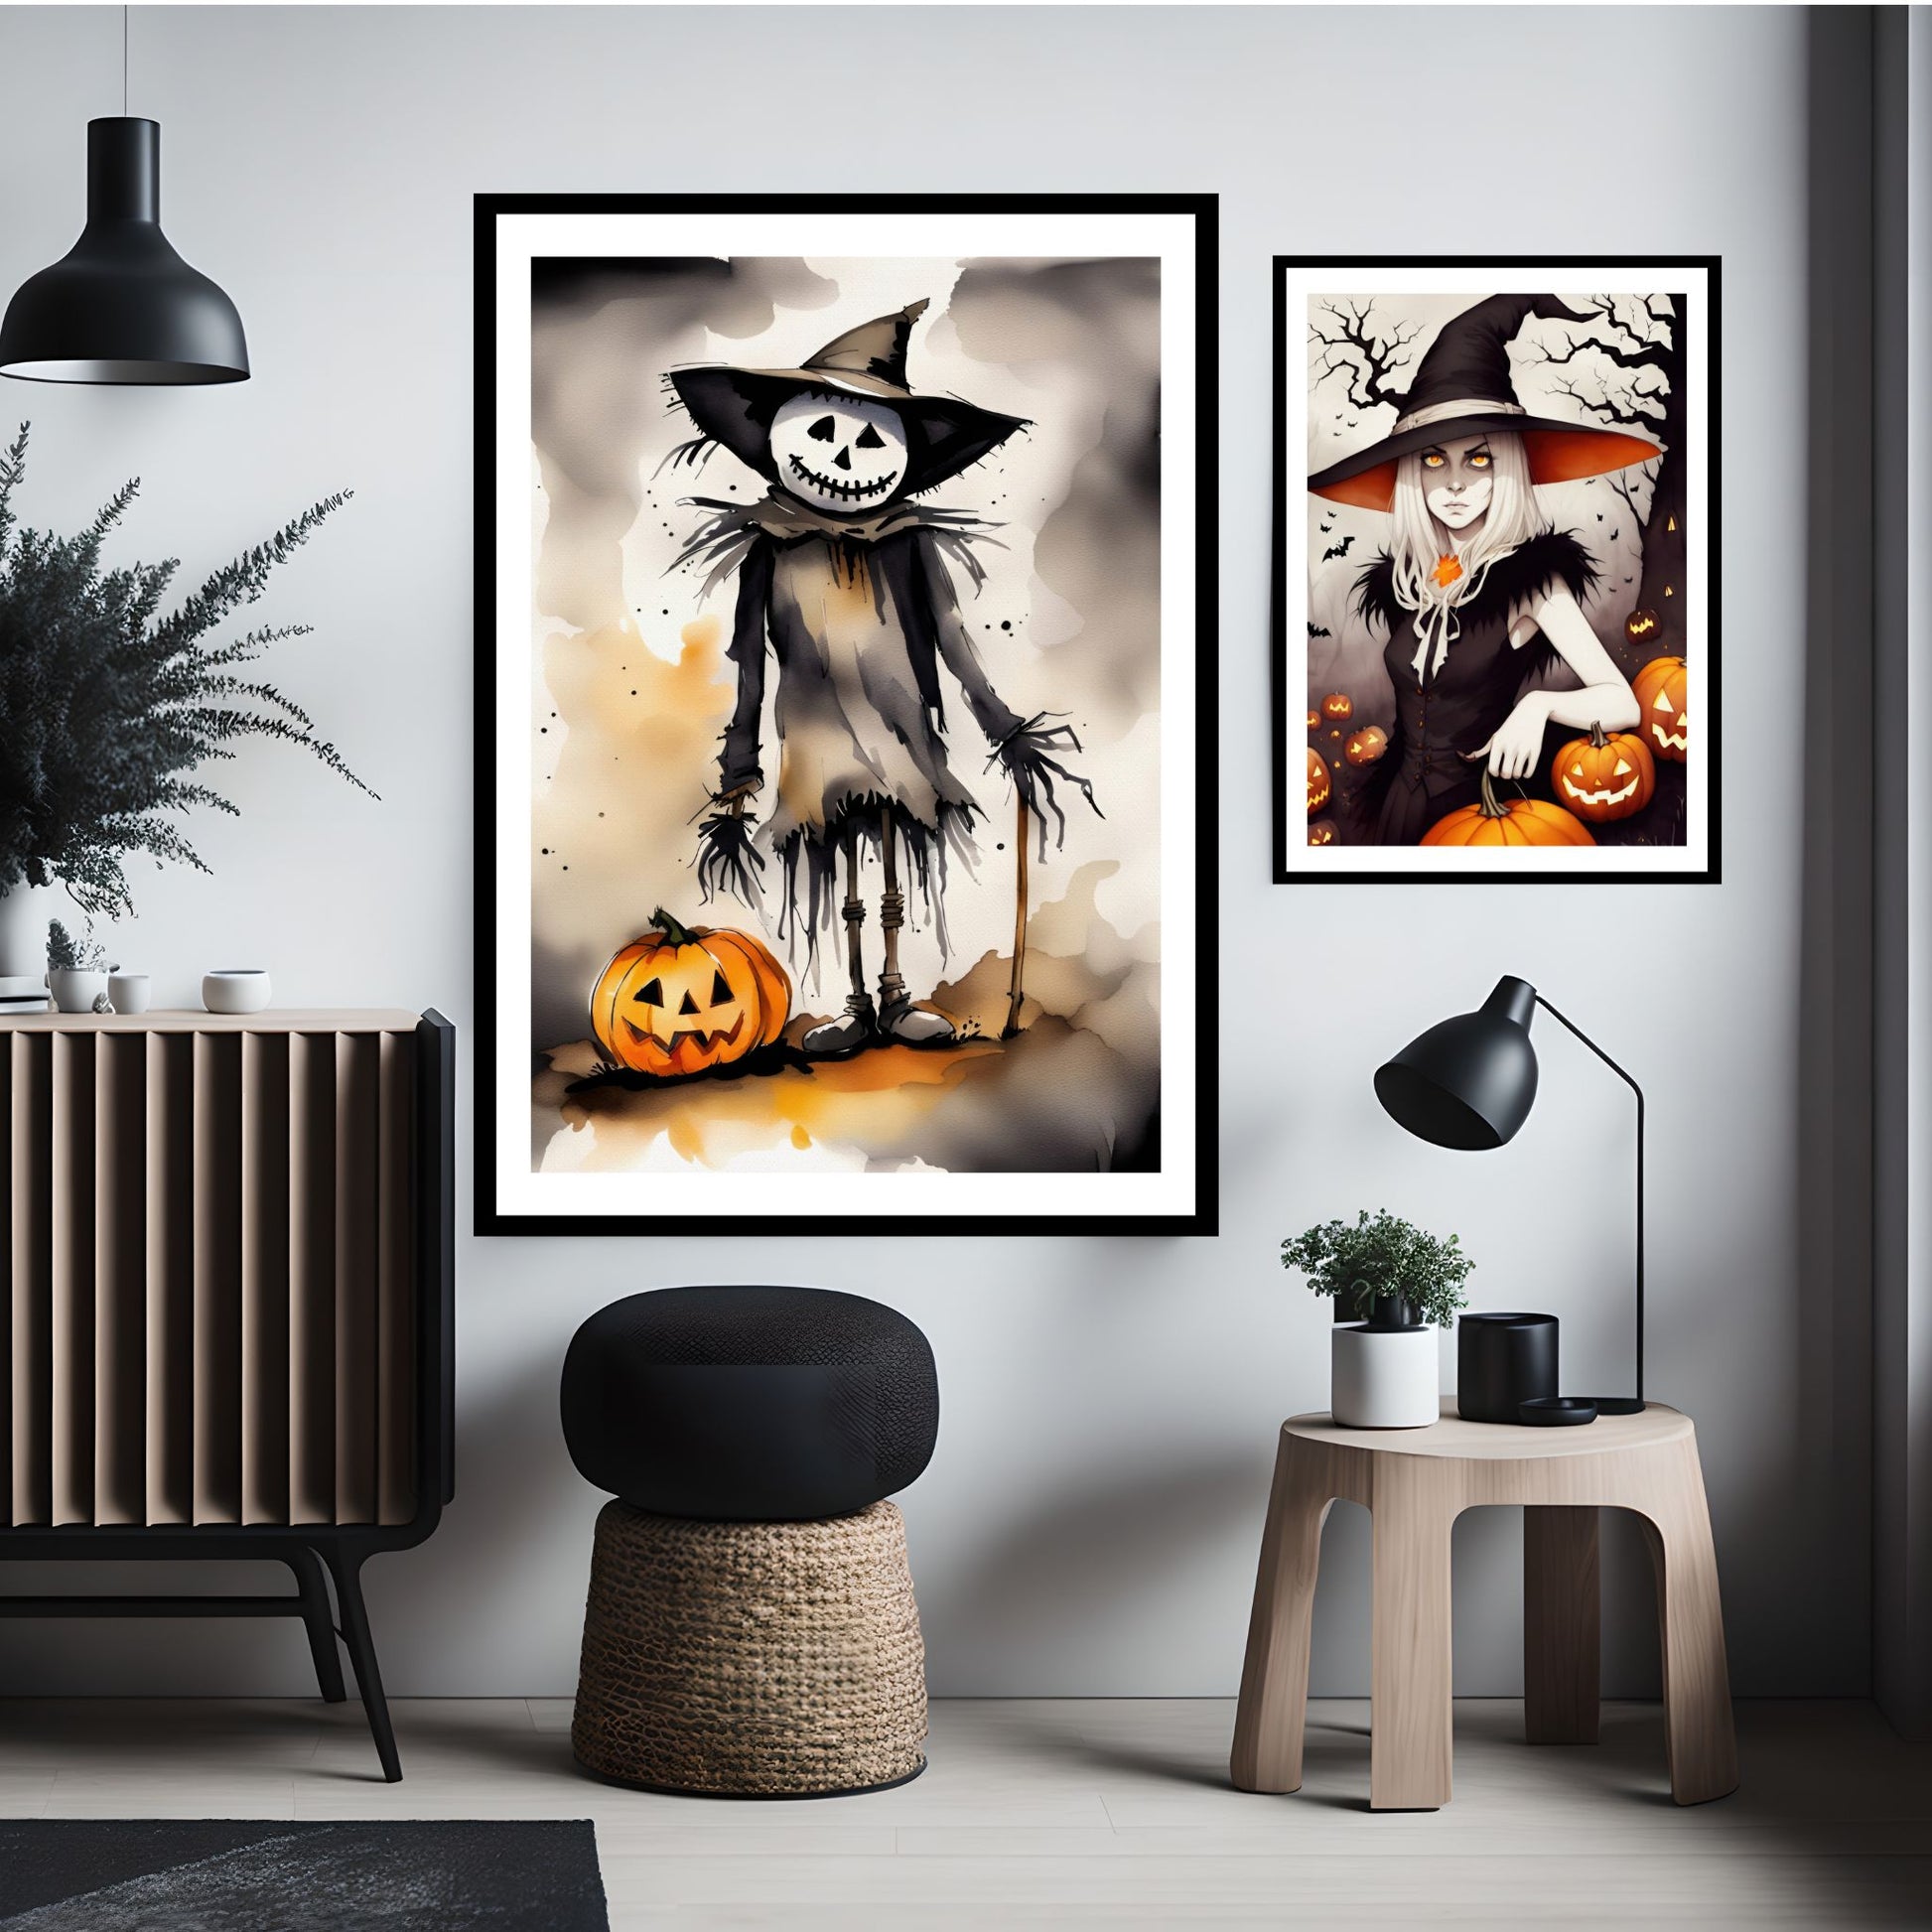 Creepy og kule halloweenplakater. Motivene som er i cartoon forestiller fugleskremsel og heks